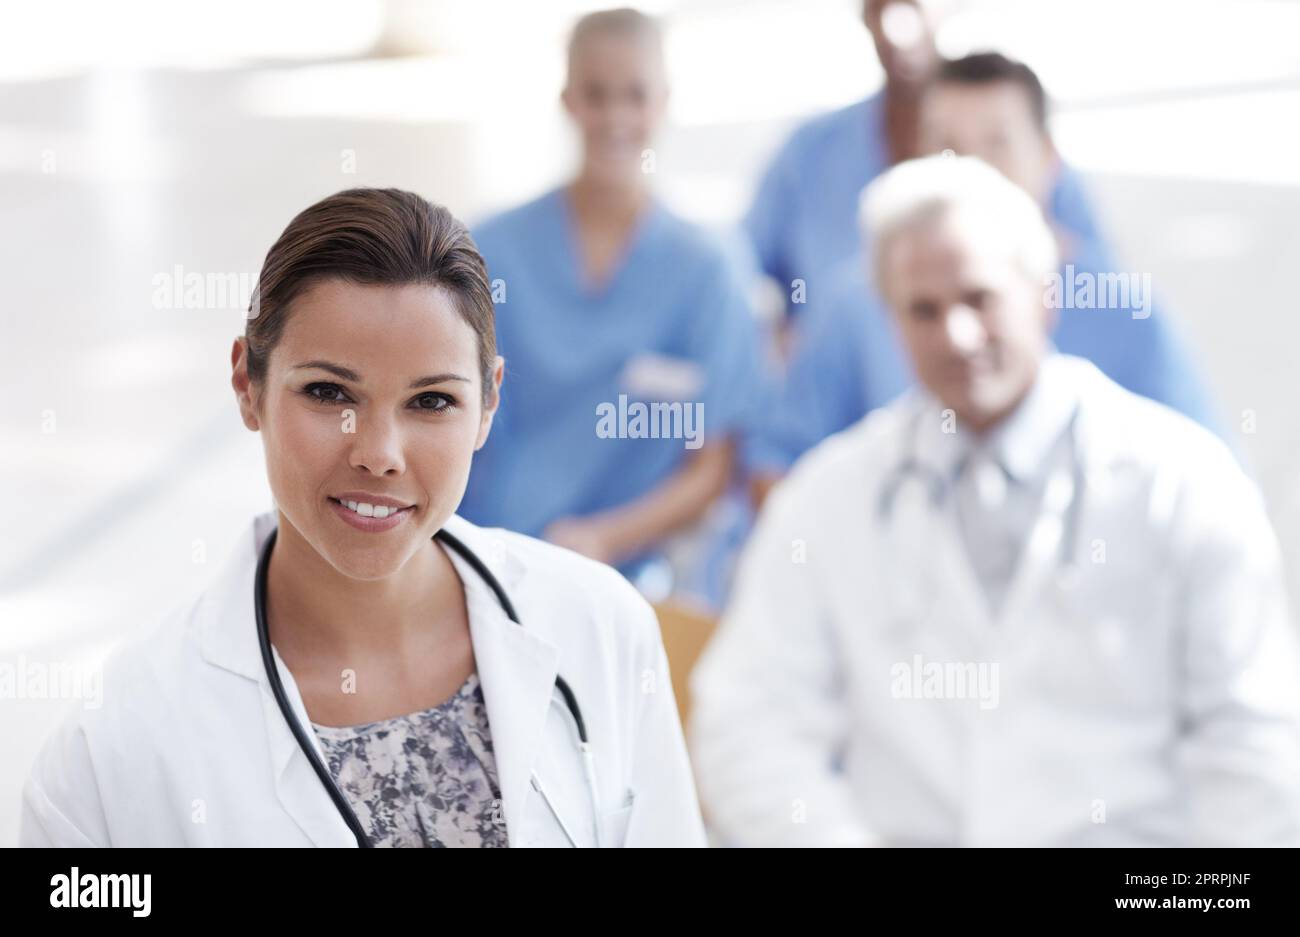 Leidenschaft und Engagement machen sie erfolgreich. Ein Arzt steht mit Kollegen im Hintergrund. Stockfoto